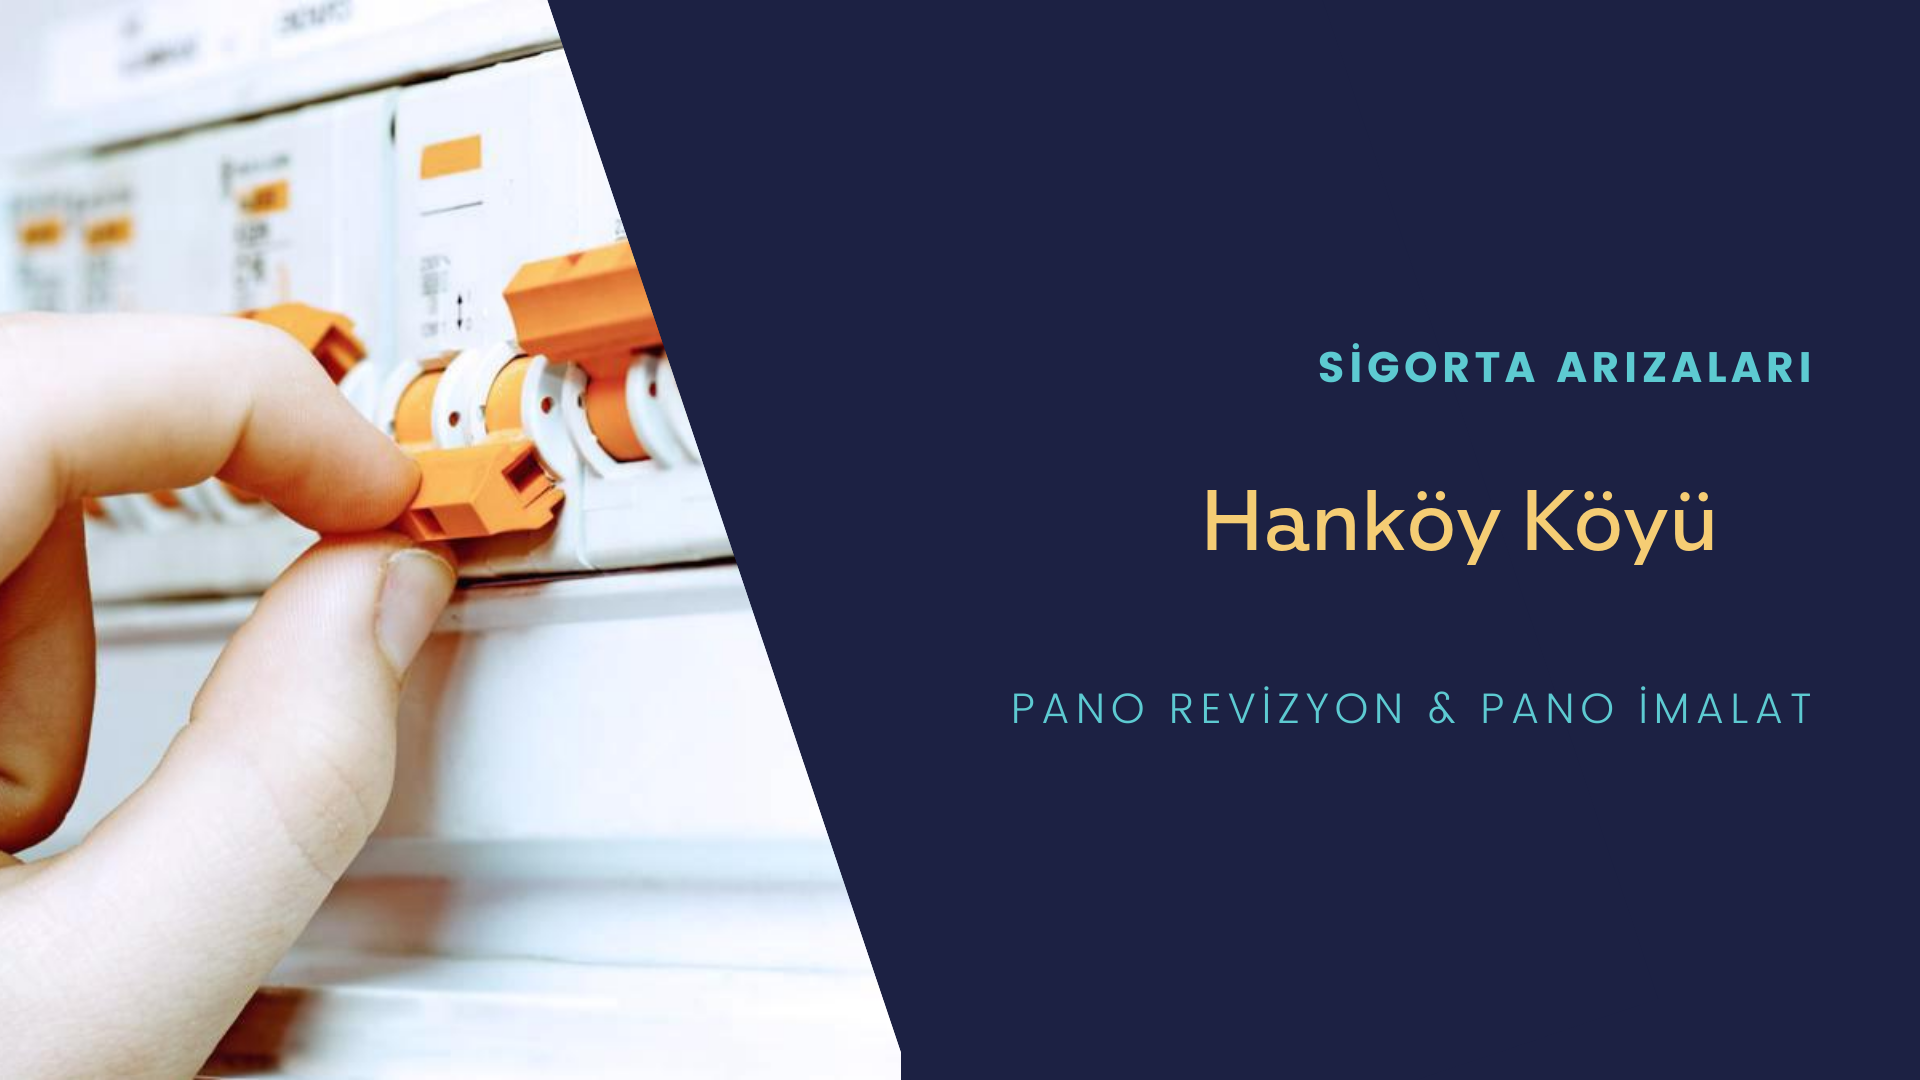 Hanköy Köyü Sigorta Arızaları İçin Profesyonel Elektrikçi ustalarımızı dilediğiniz zaman arayabilir talepte bulunabilirsiniz.